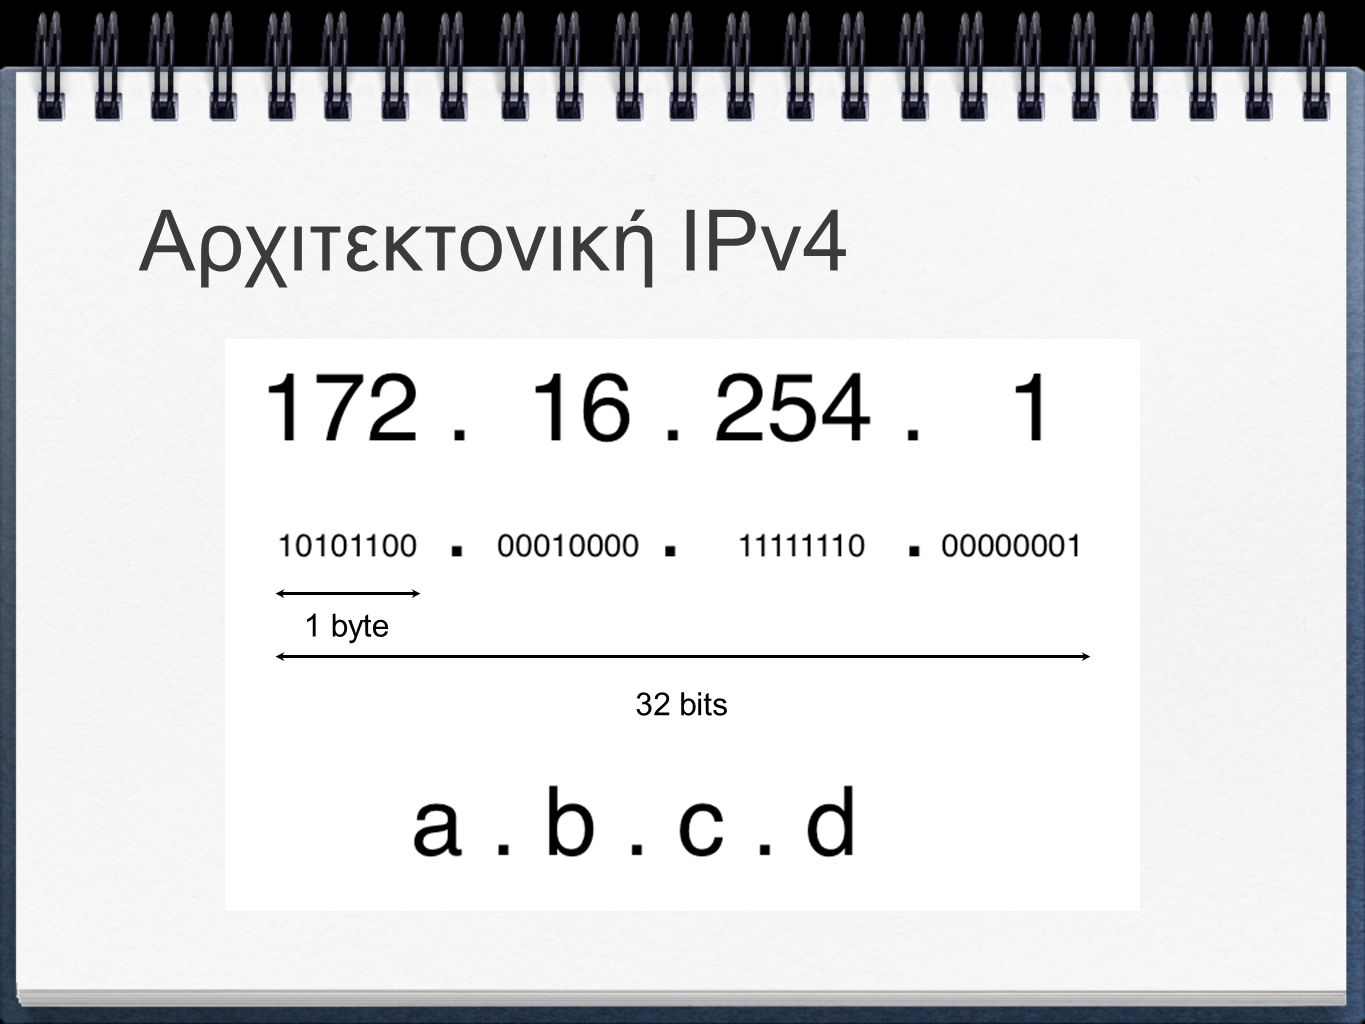 Αρχιτεκτονική ΙPv4 1 byte 32 bits